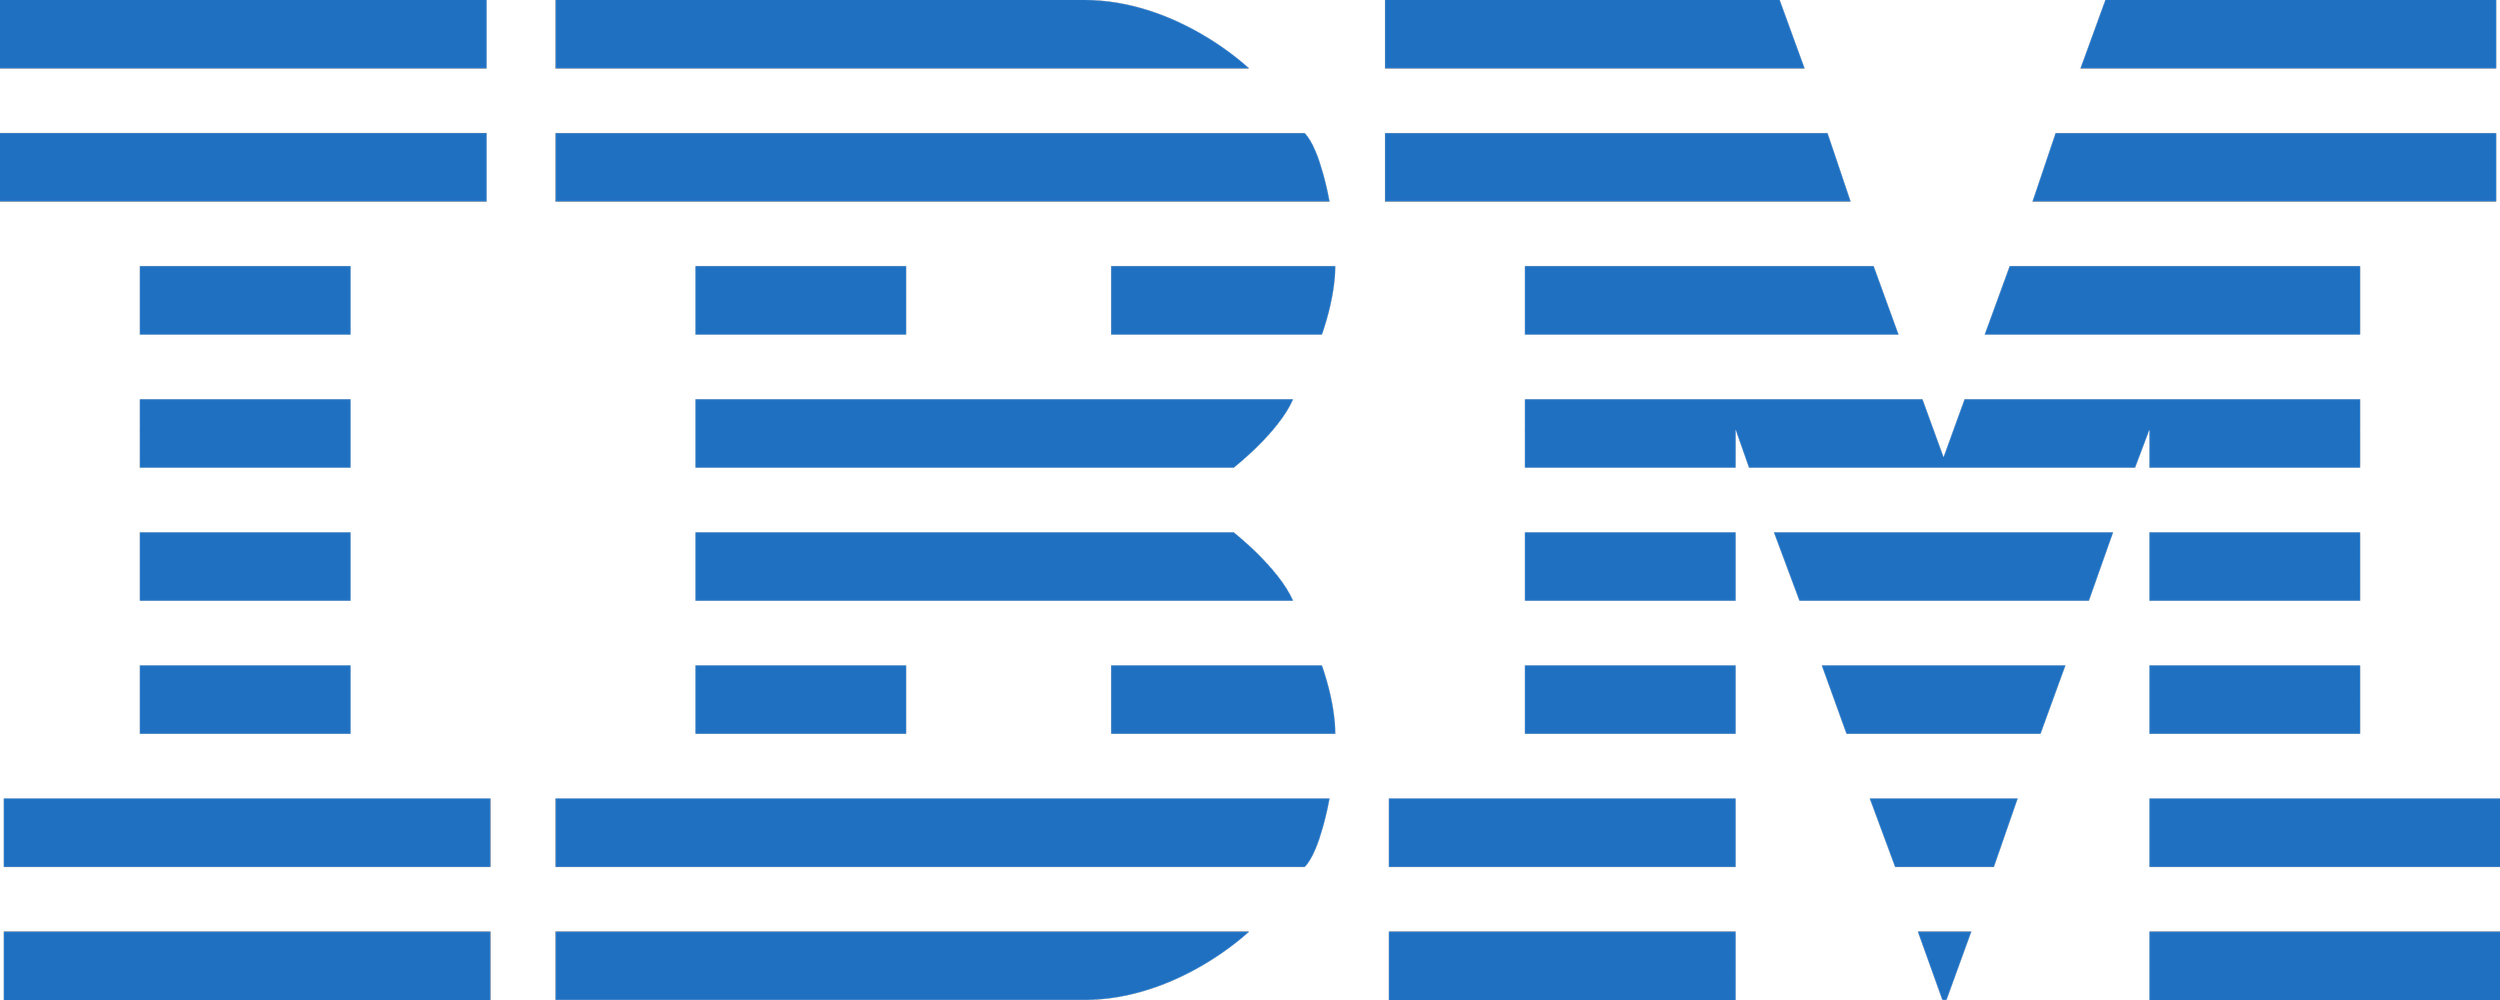 IBM download (3).png